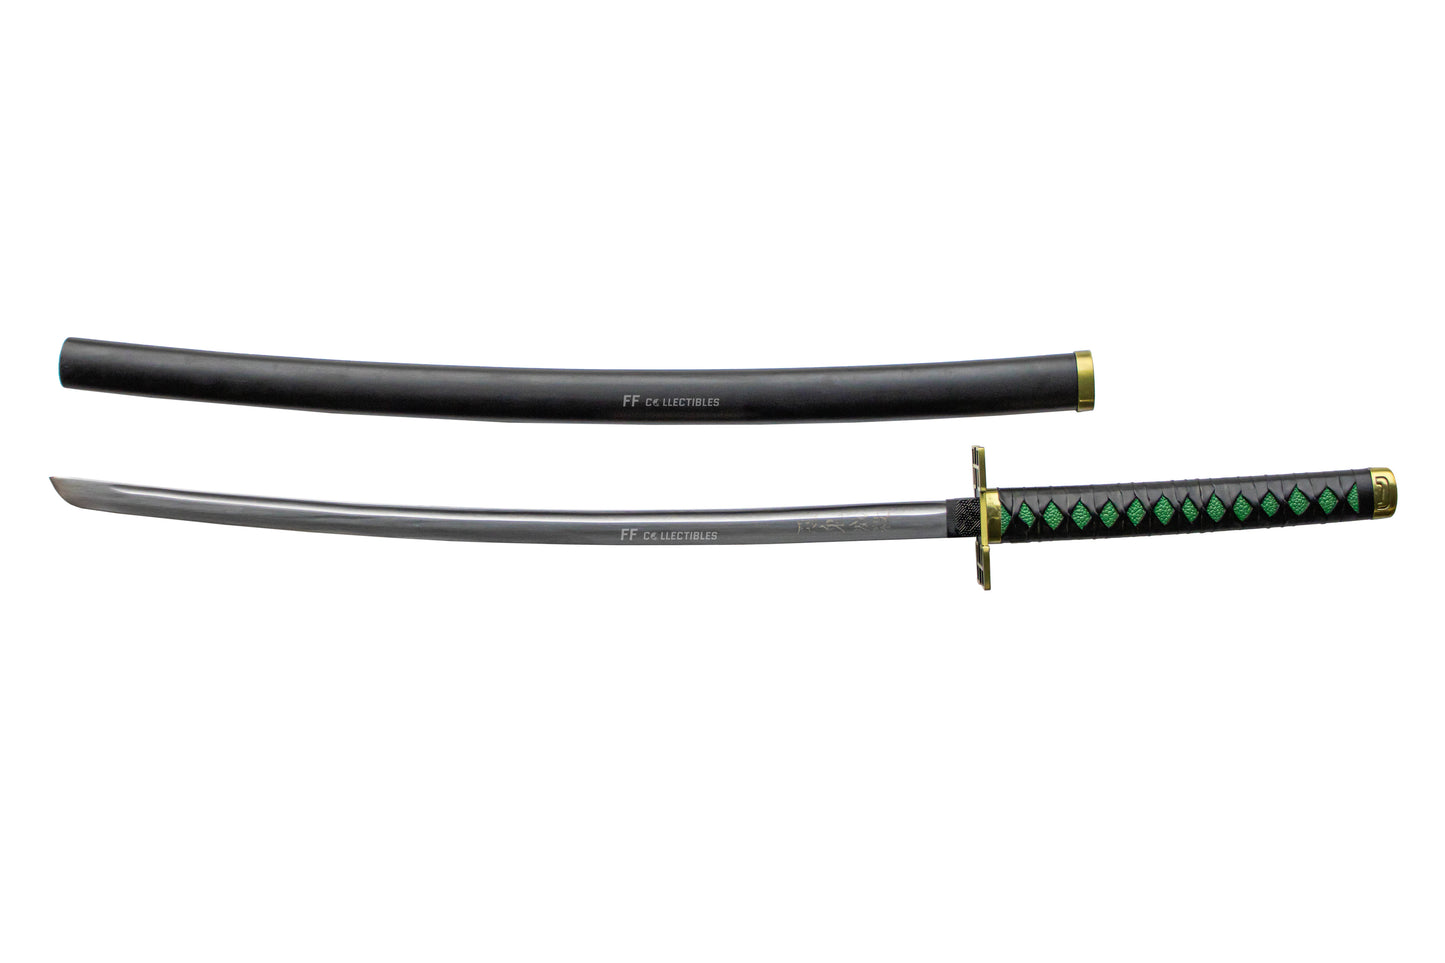 DEMON SLAYER – MUICHIRO TOKITO’S NICHIRIN SWORD (with FREE sword stand)